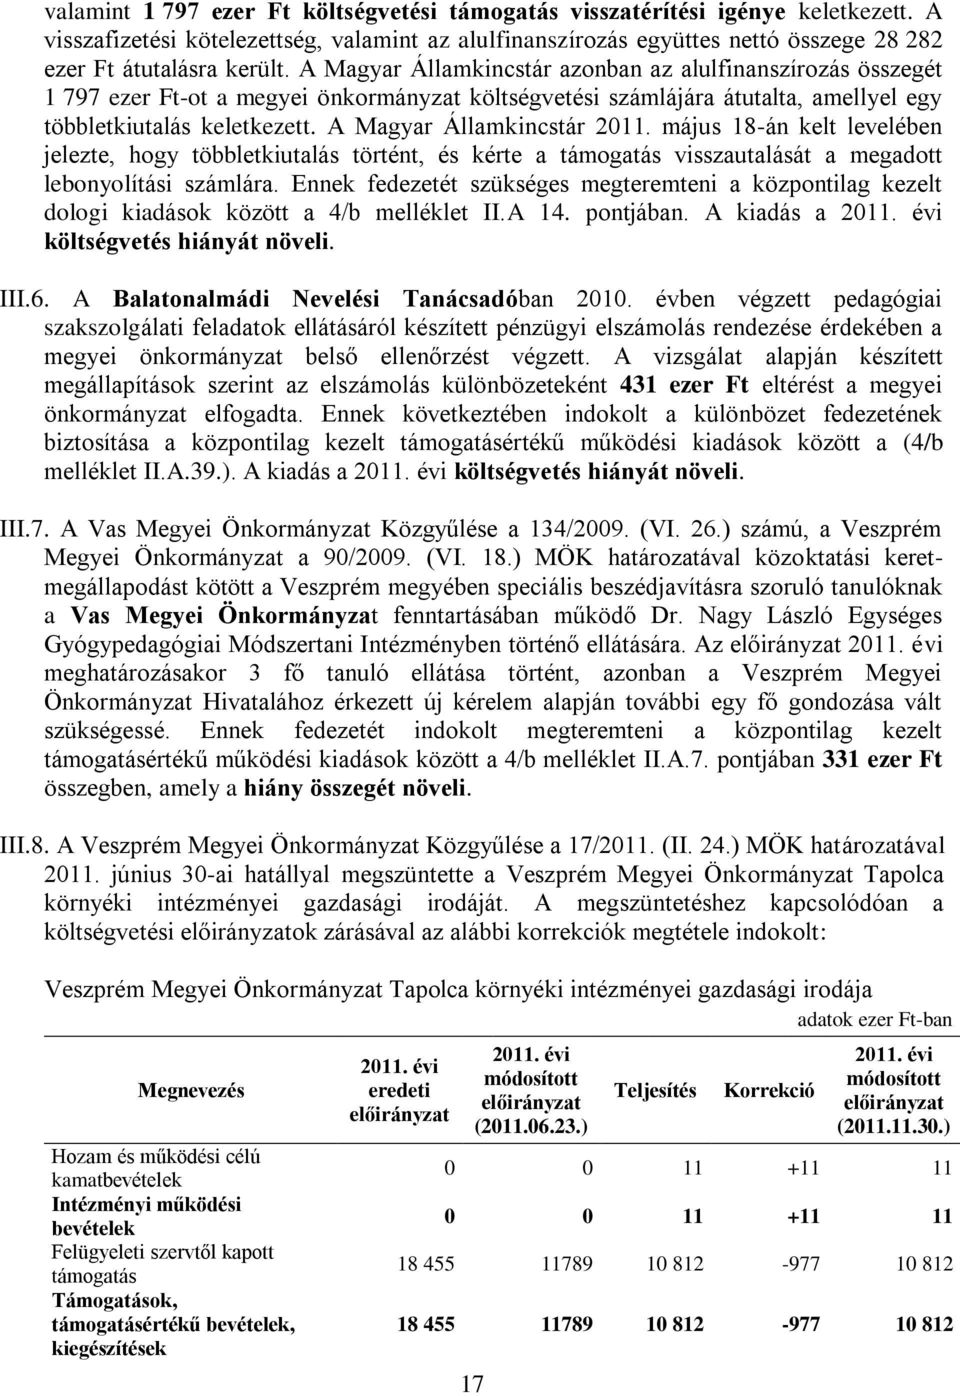 A Magyar Államkincstár 2011. május 18-án kelt levelében jelezte, hogy többletkiutalás történt, és kérte a támogatás visszautalását a megadott lebonyolítási számlára.